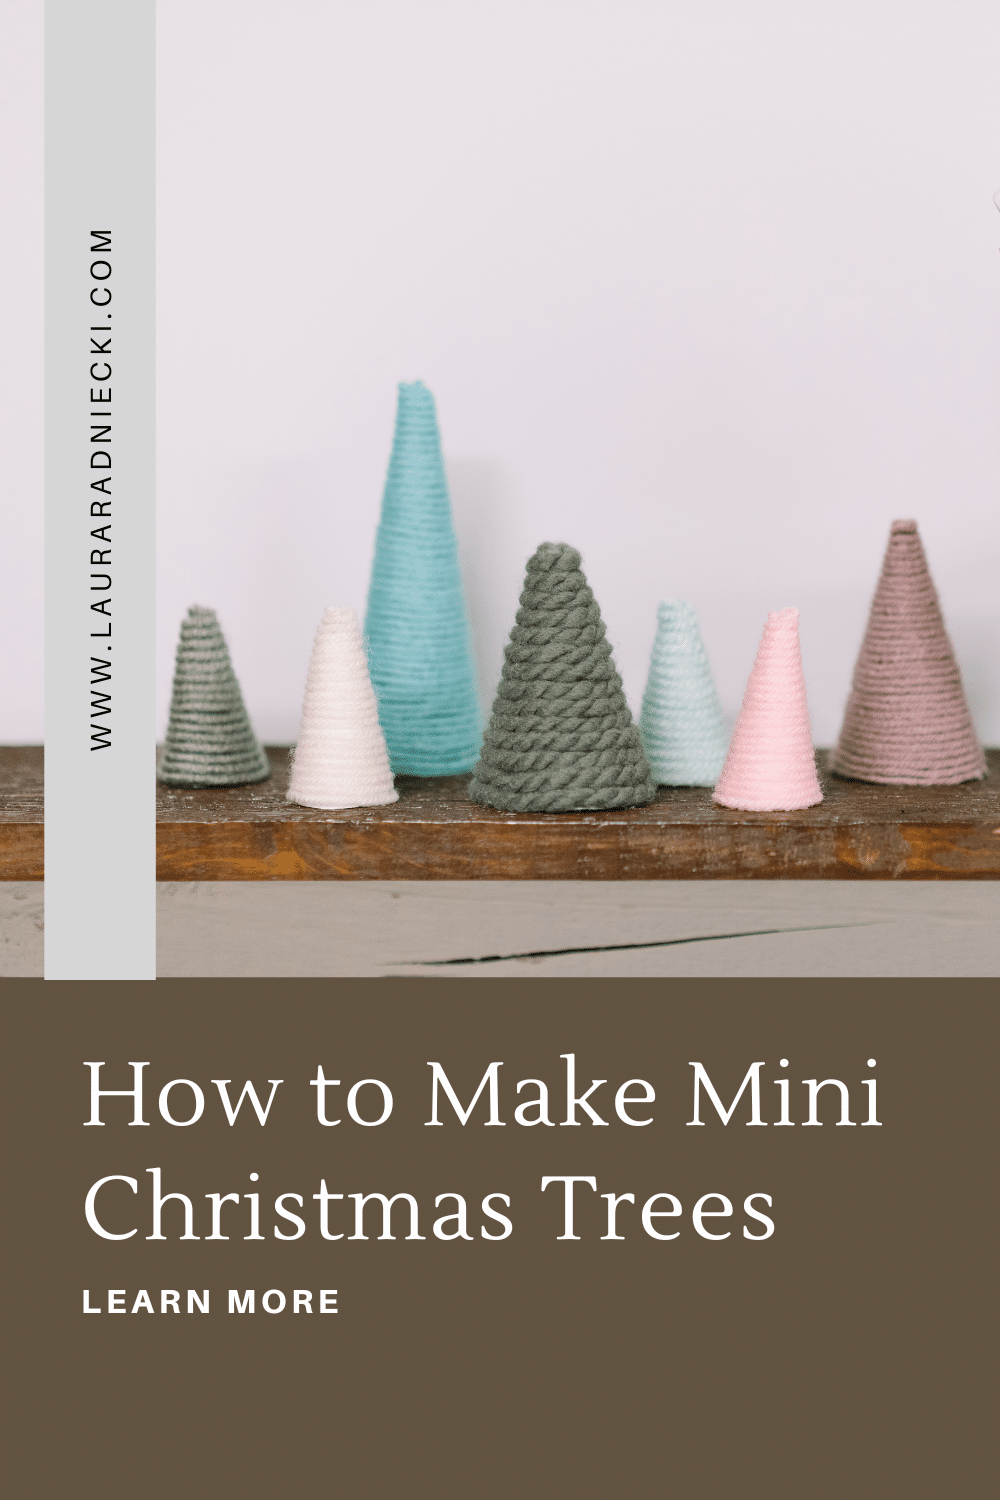 How to Make Mini Christmas Trees